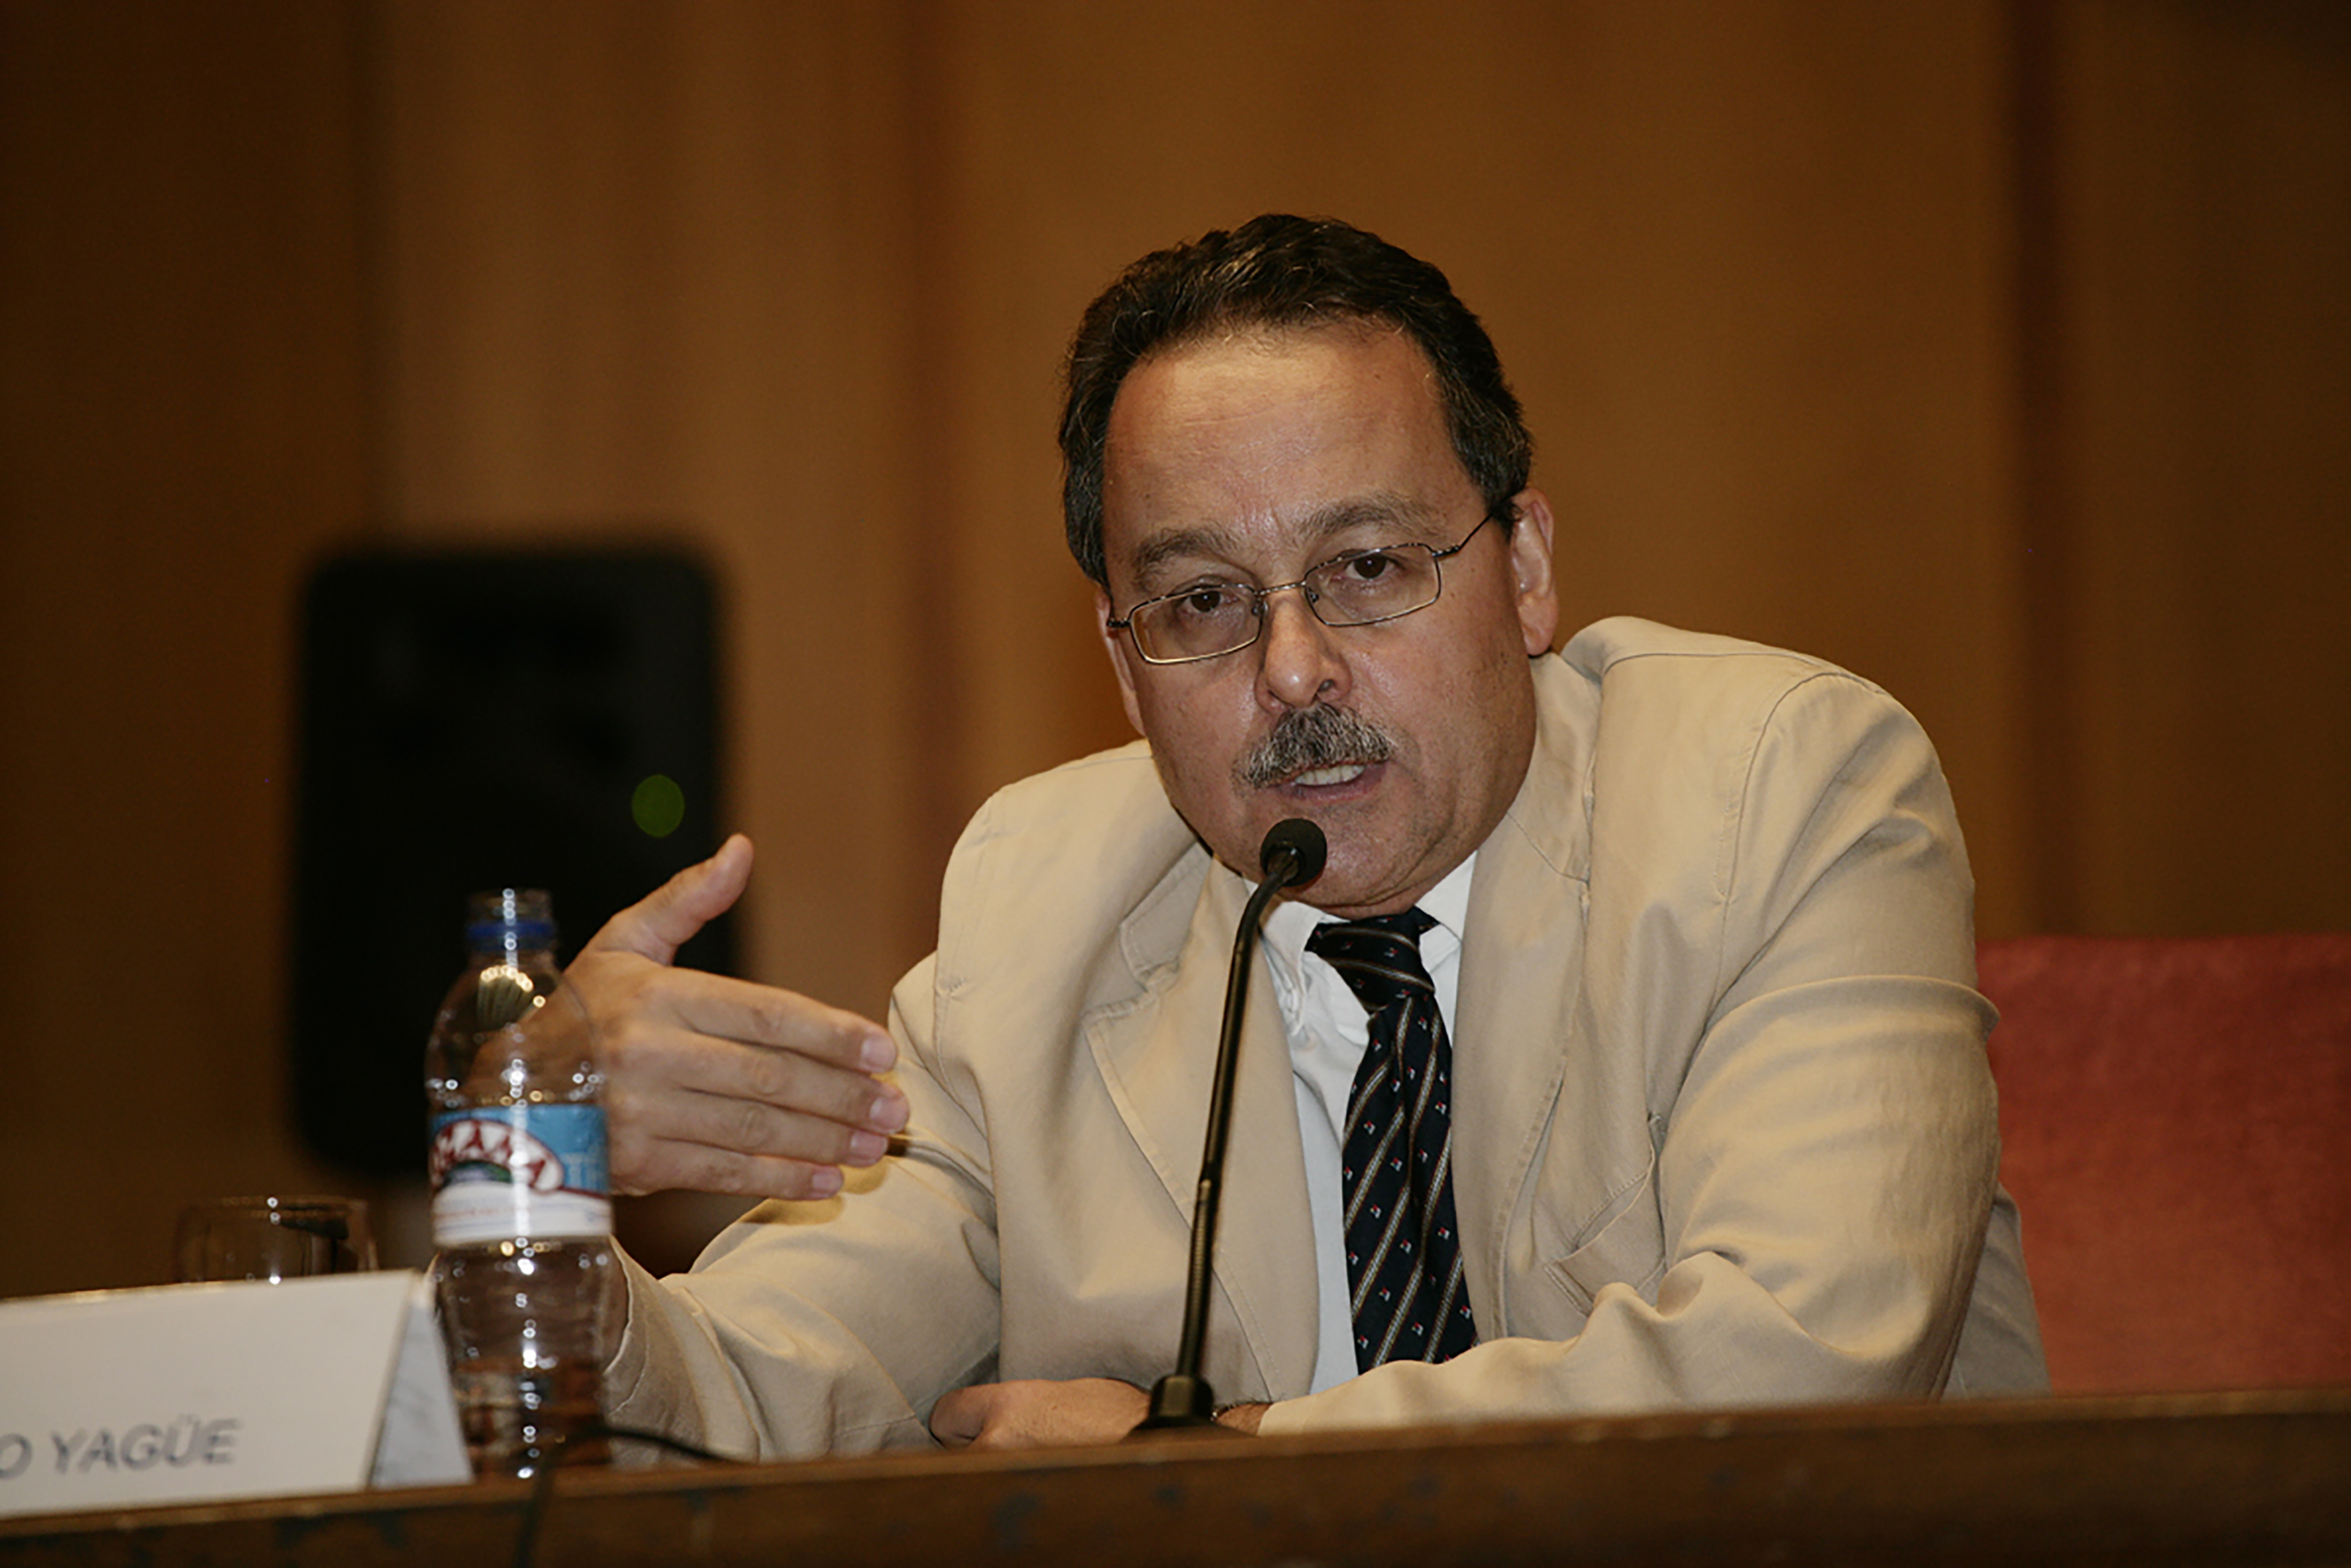 Francisco Yagüe Álvarez